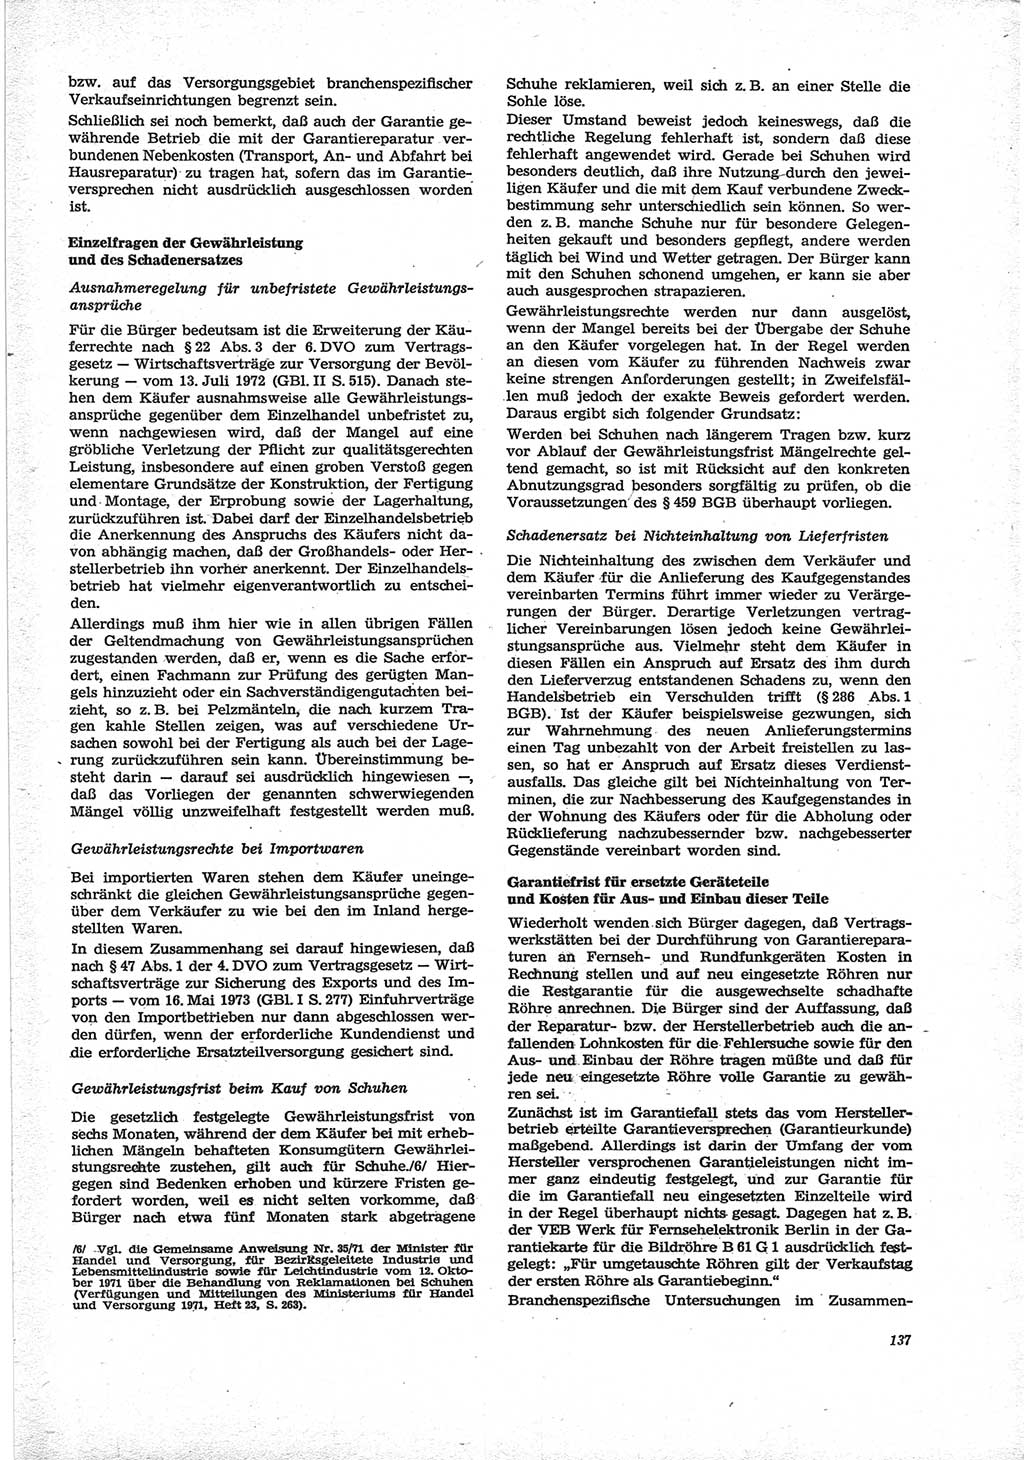 Neue Justiz (NJ), Zeitschrift für Recht und Rechtswissenschaft [Deutsche Demokratische Republik (DDR)], 28. Jahrgang 1974, Seite 137 (NJ DDR 1974, S. 137)